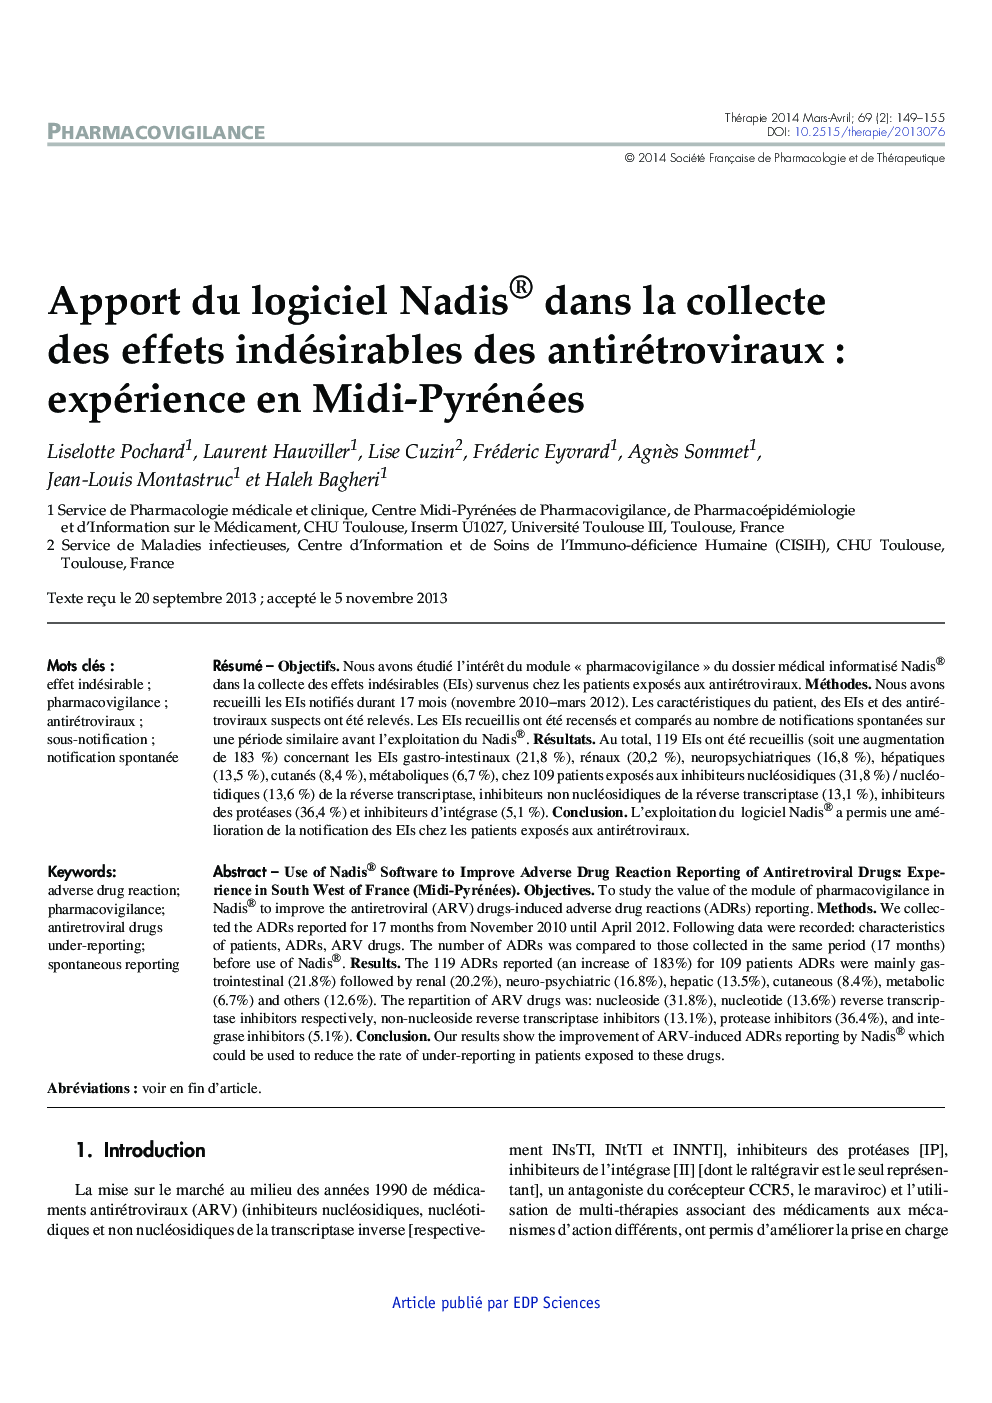 Apport du logiciel Nadis® dans la collecte des effets indésirables des antirétroviraux : expérience en Midi-Pyrénées